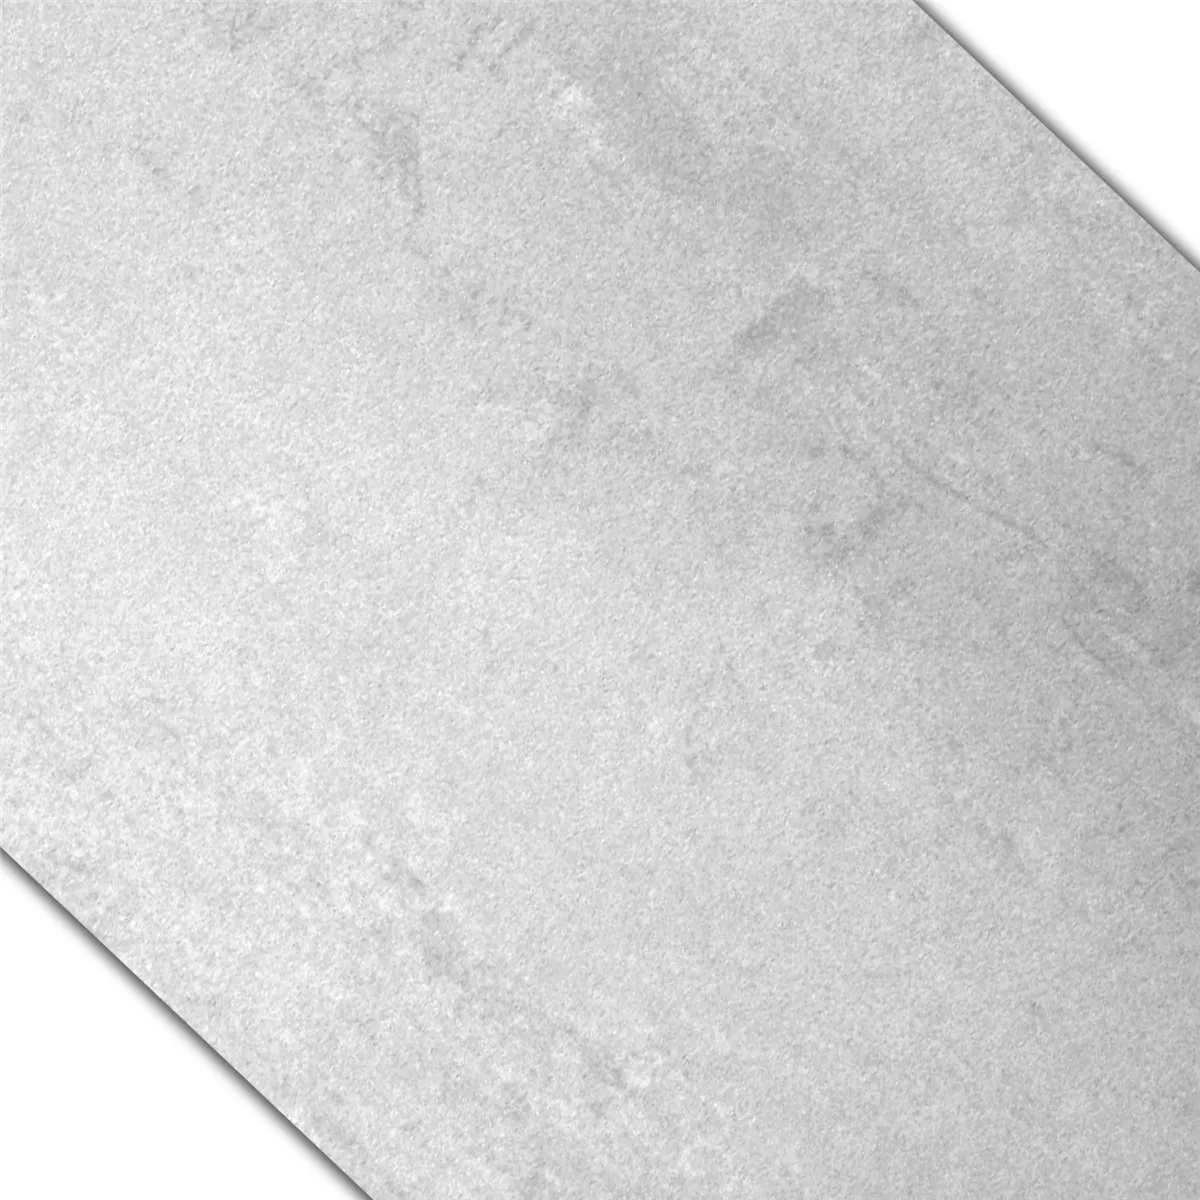 Próbka Płytki Podłogowe Madeira Półpolerowane Biały 30x60cm